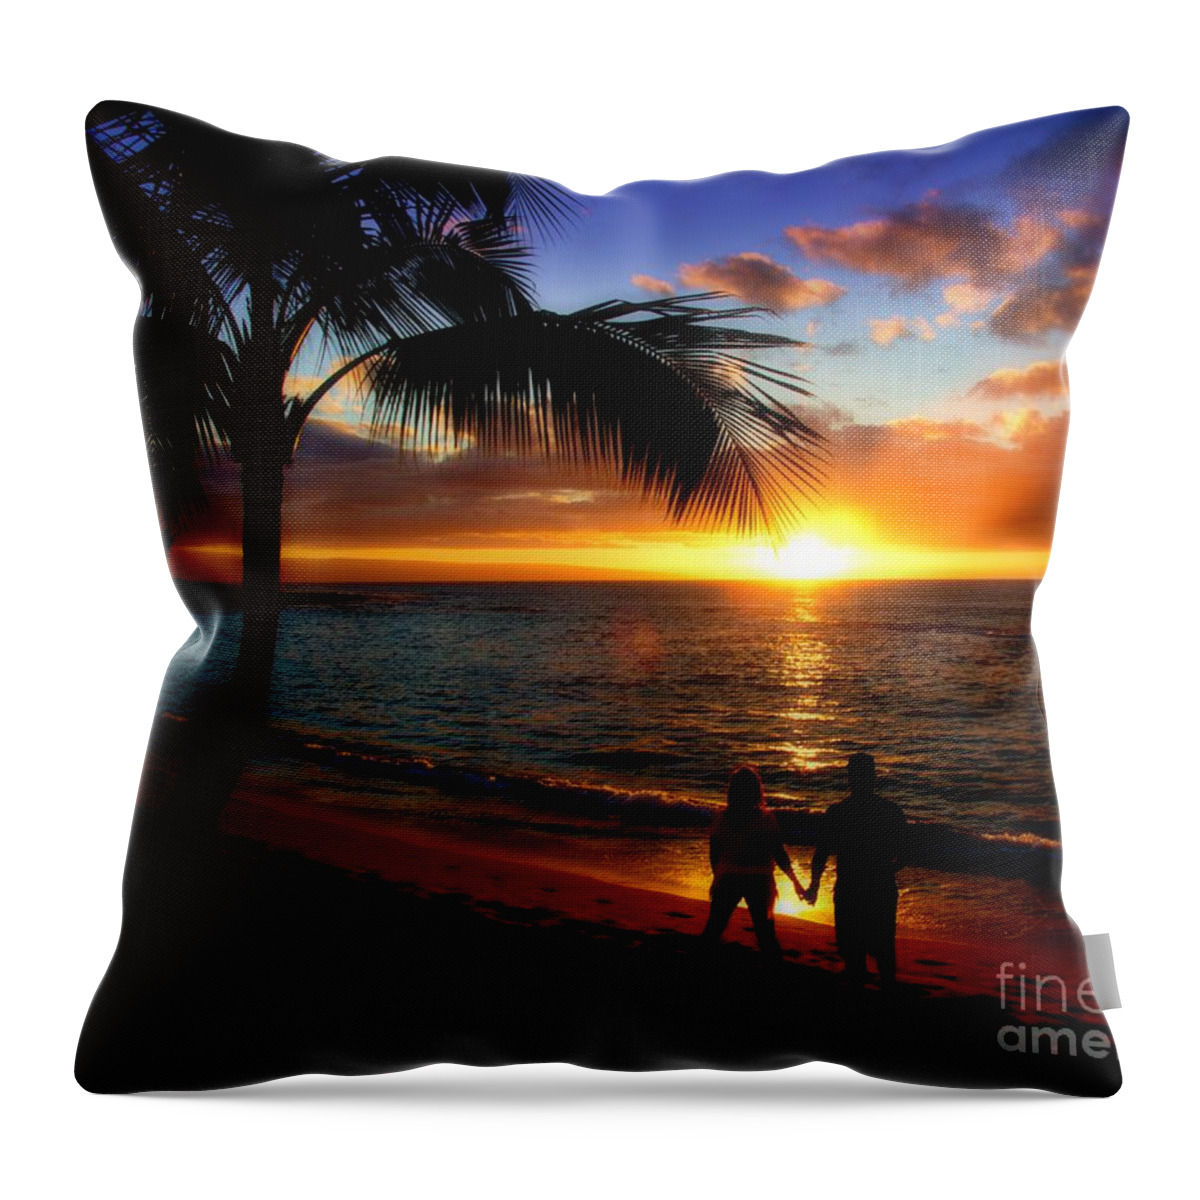 Romantic Sunset Hawaii Throw Pillow featuring the photograph Romantic Sunset Hawaii by Patrick Witz